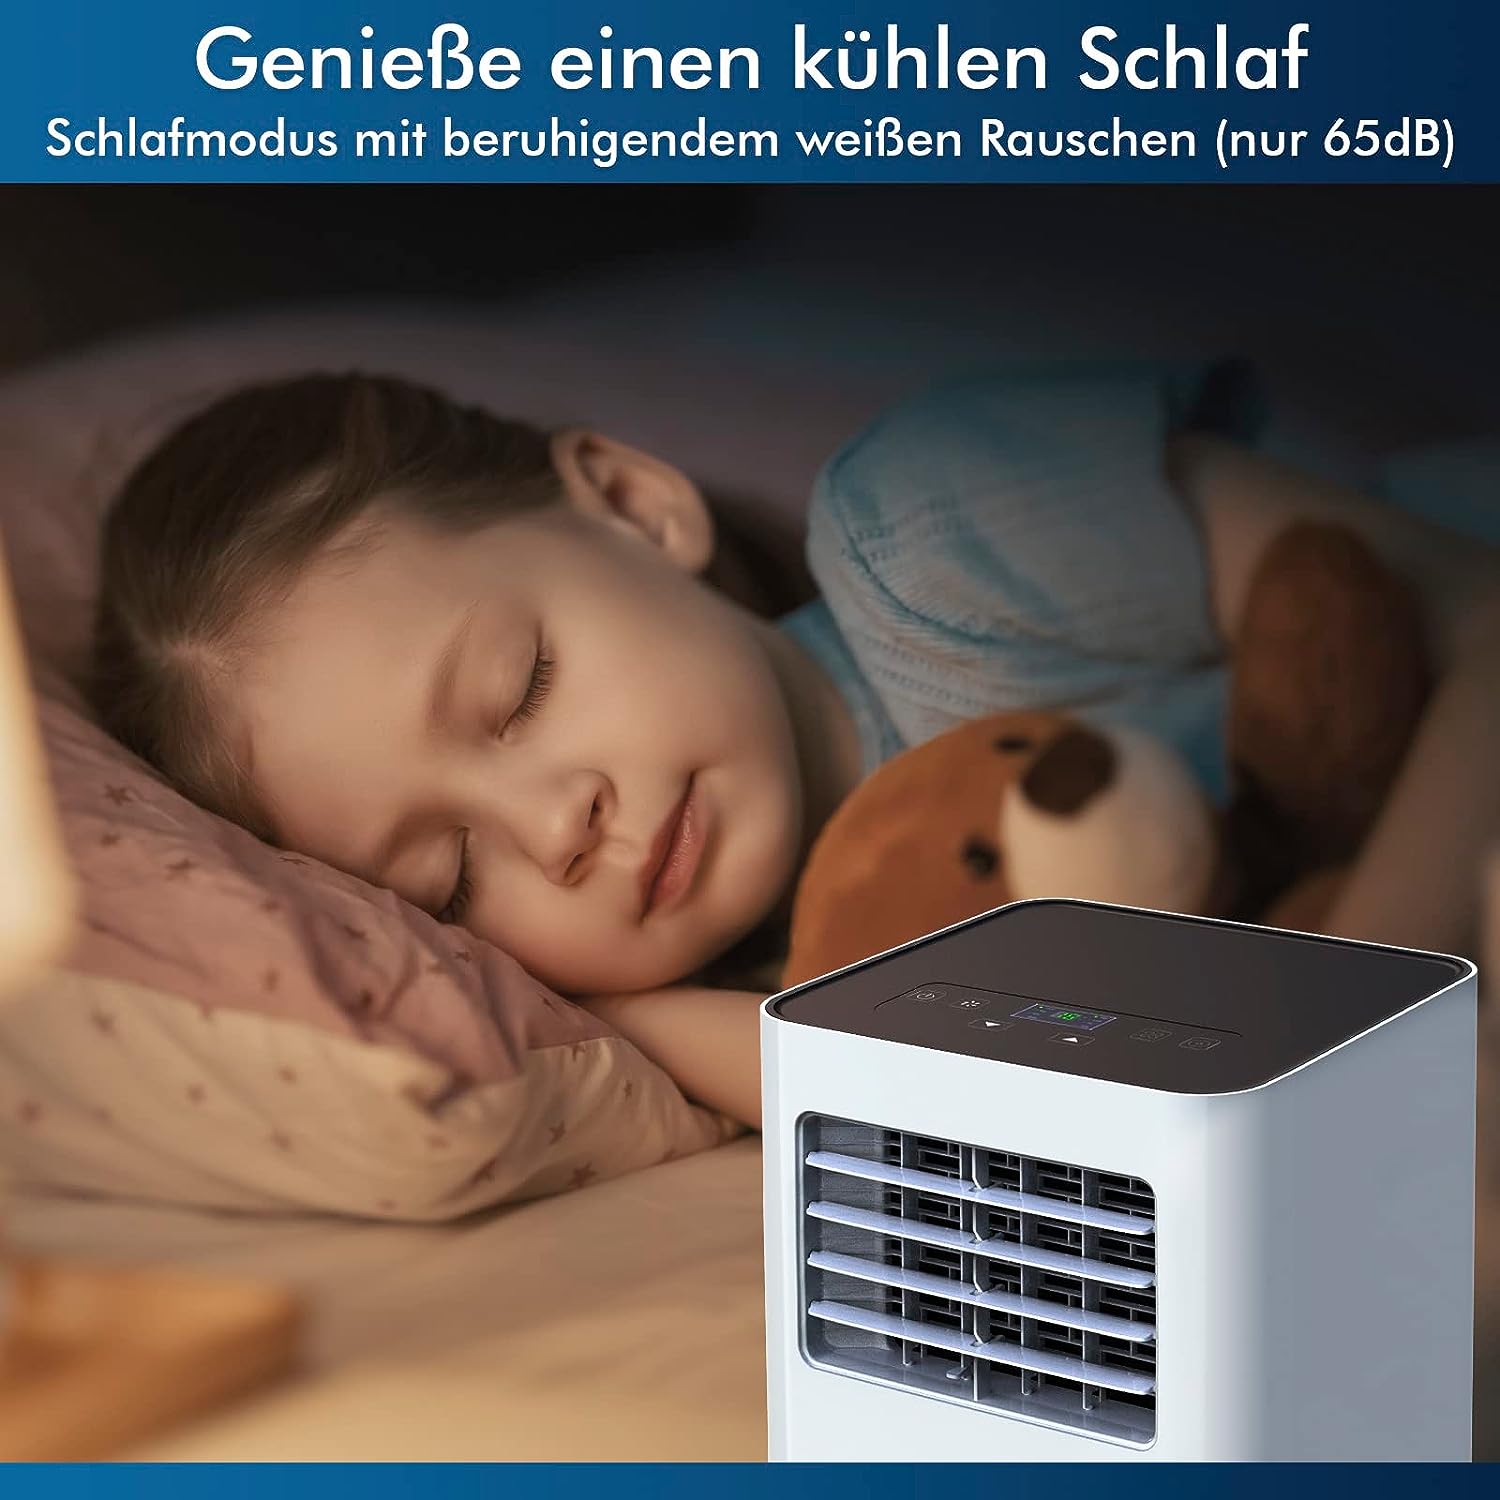 KLIM K9000 Klimaanlage